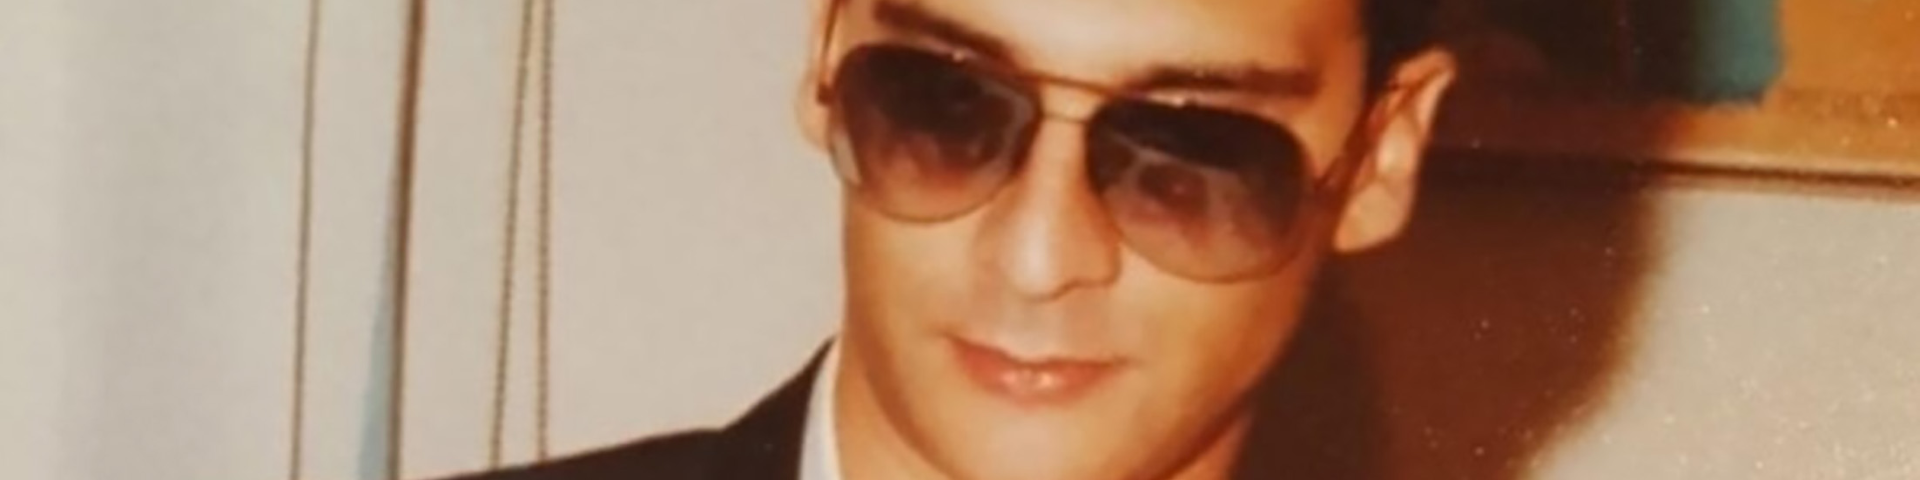 Ухапшен последњи велики мафијашки кум: Матео Месина Денаро звани Дијаболик, шеф Суперкоза ностре